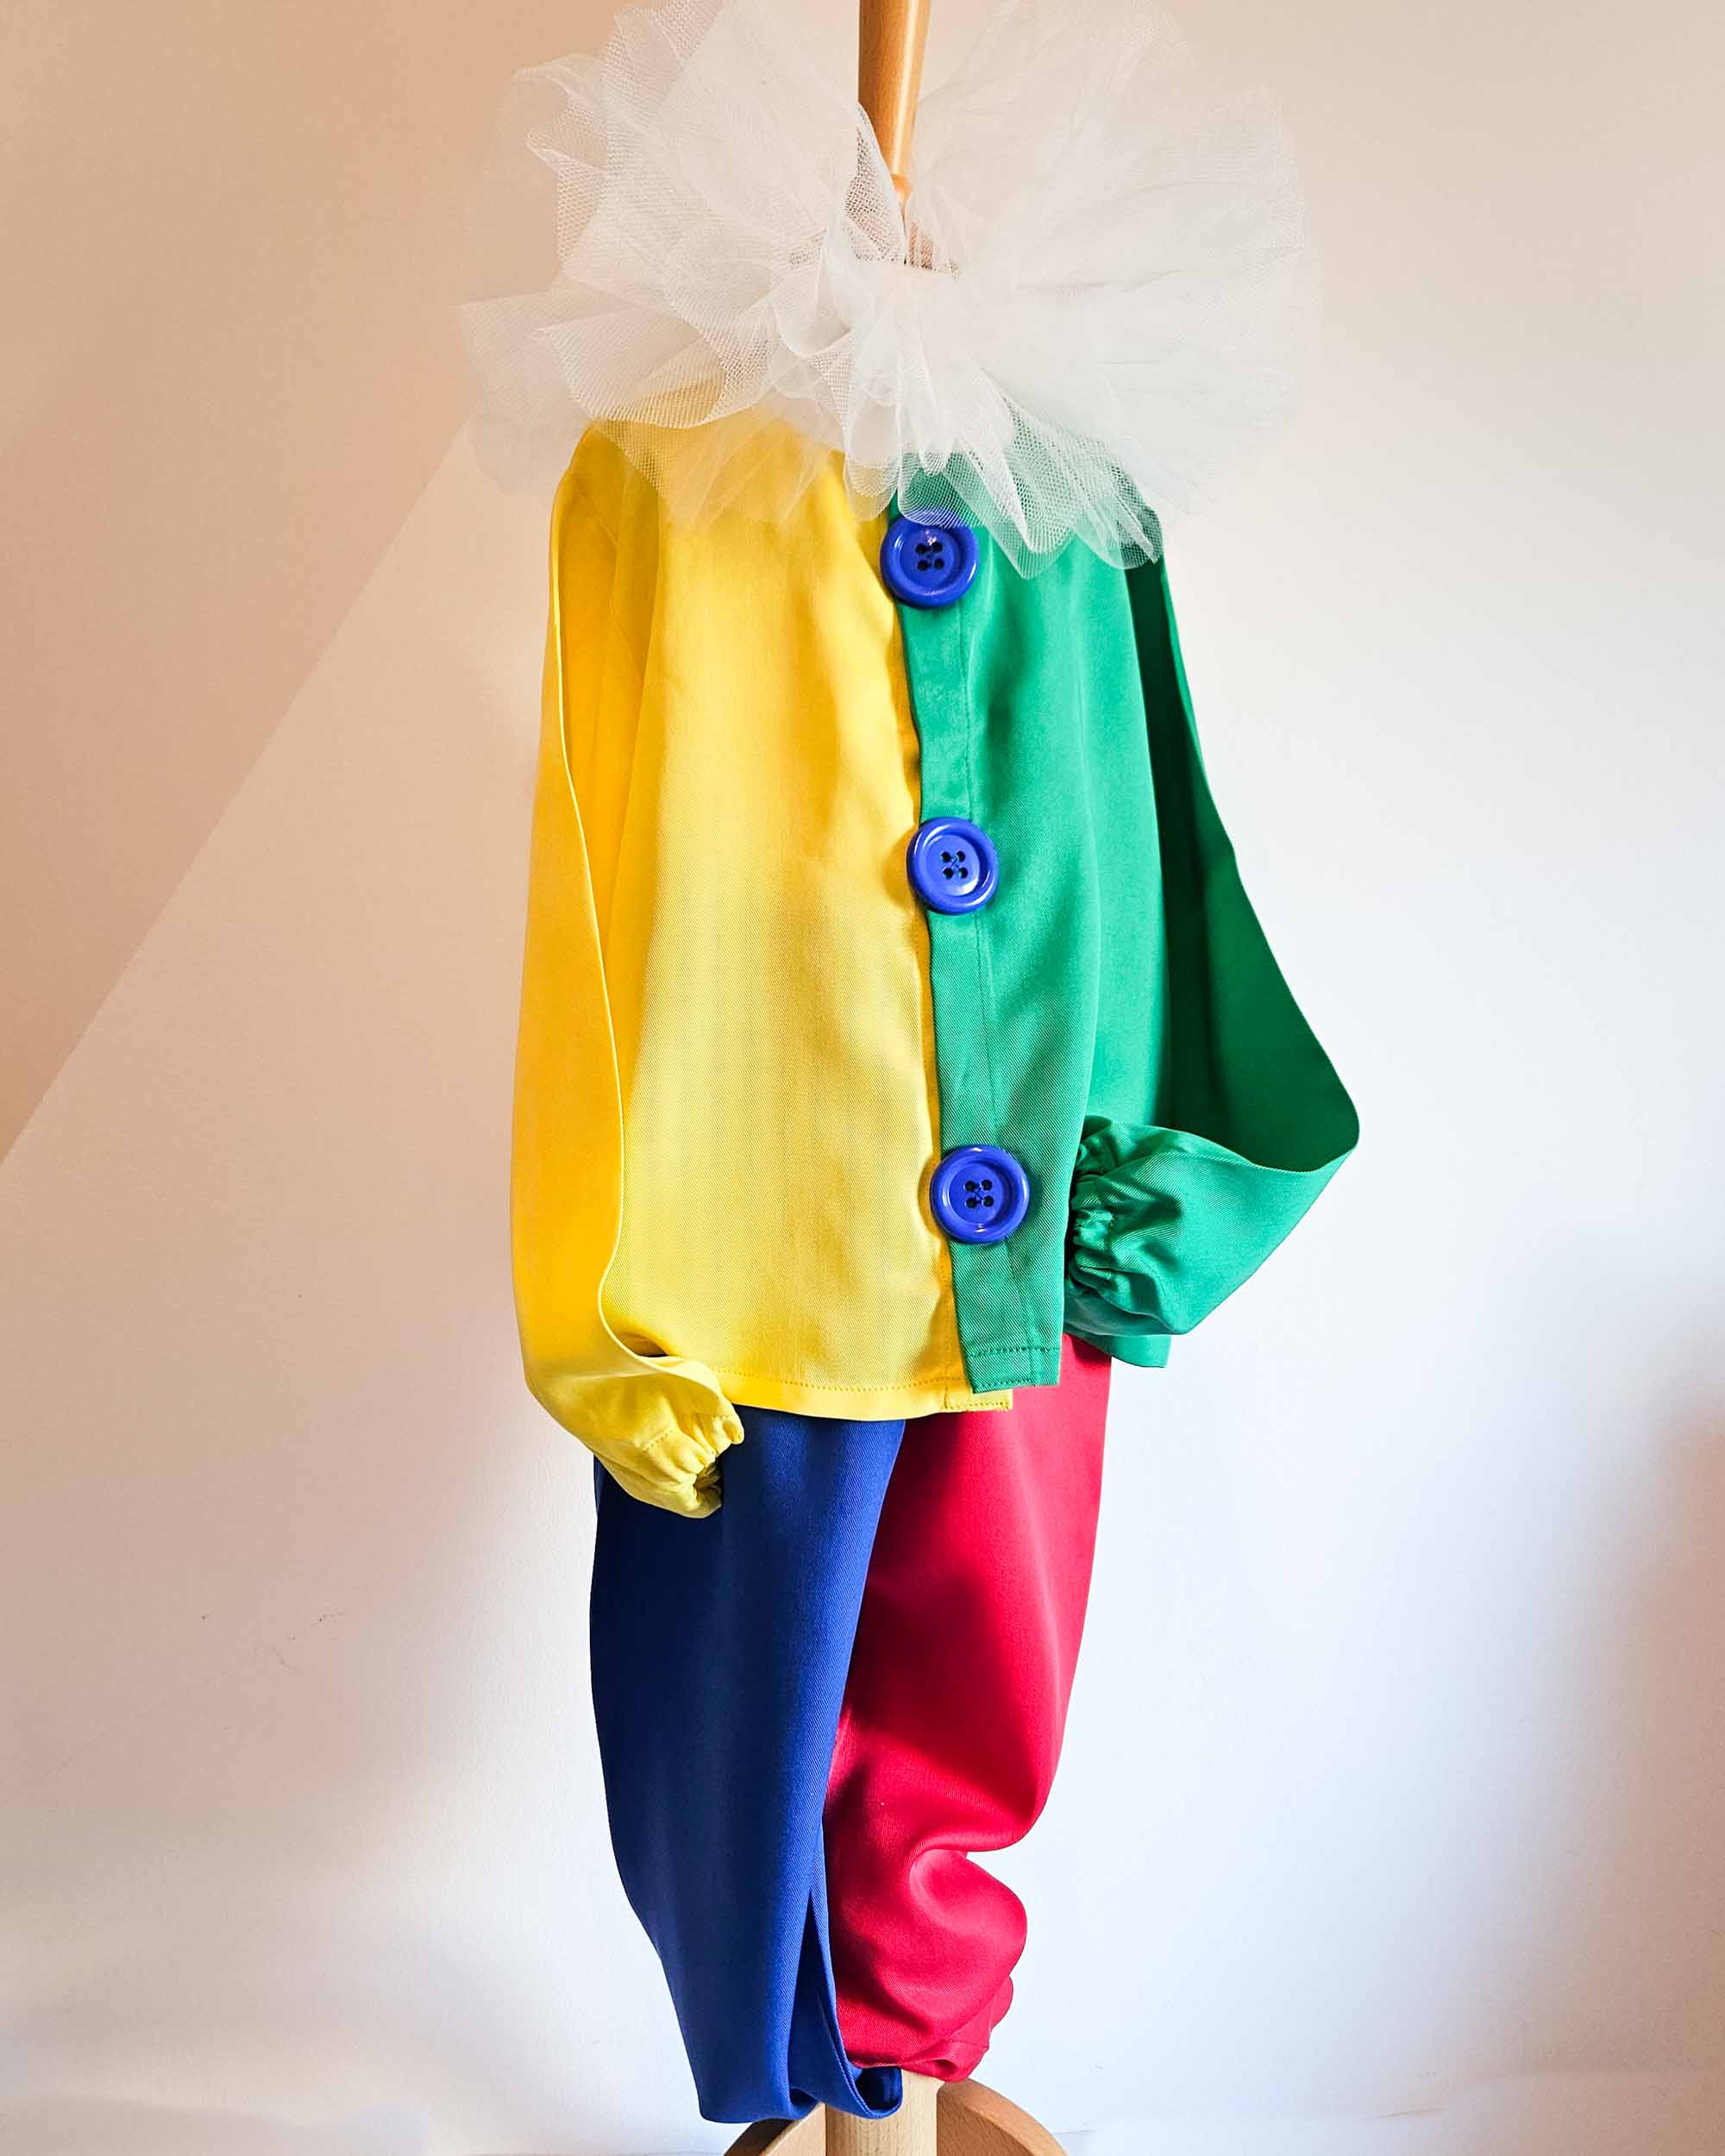 Atelier Spatz Knopf Clown Hosenträger für Kinder